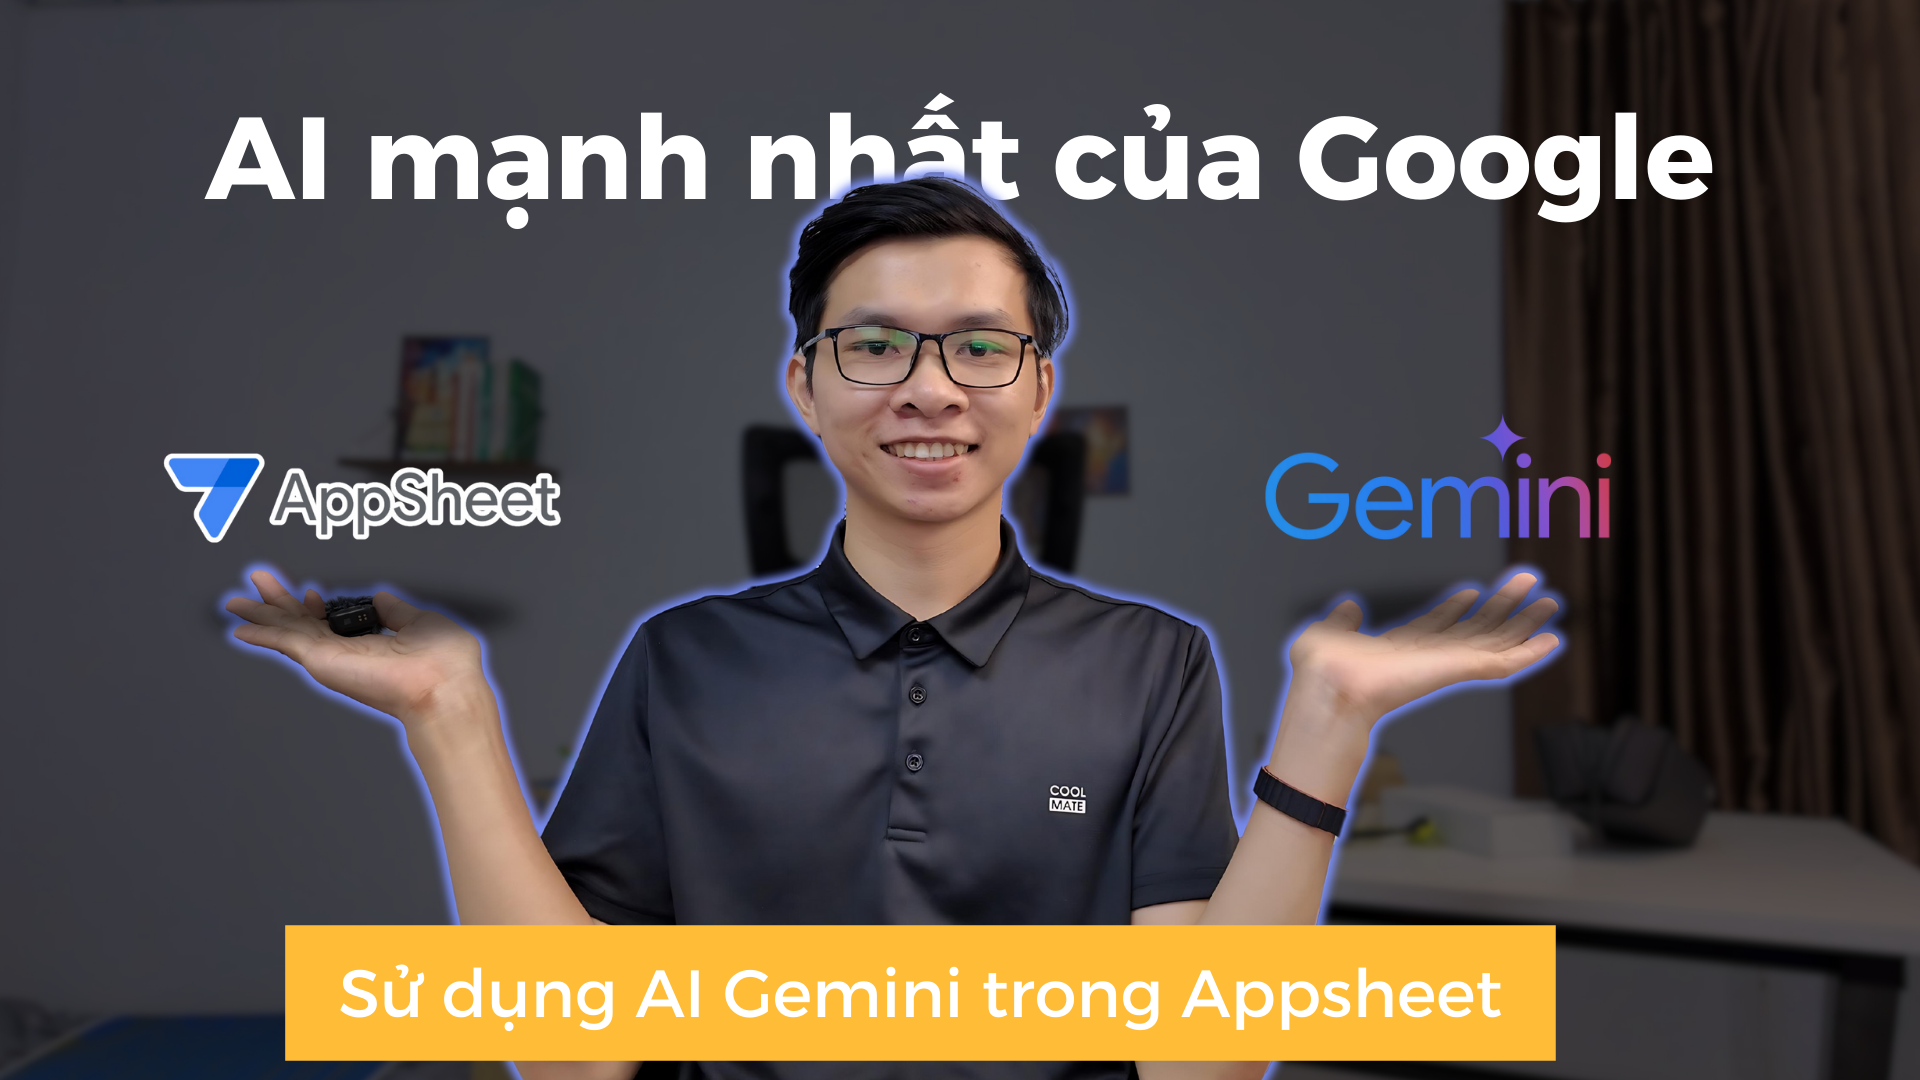 Hướng sử dụng GEMINI trong Google Appsheet